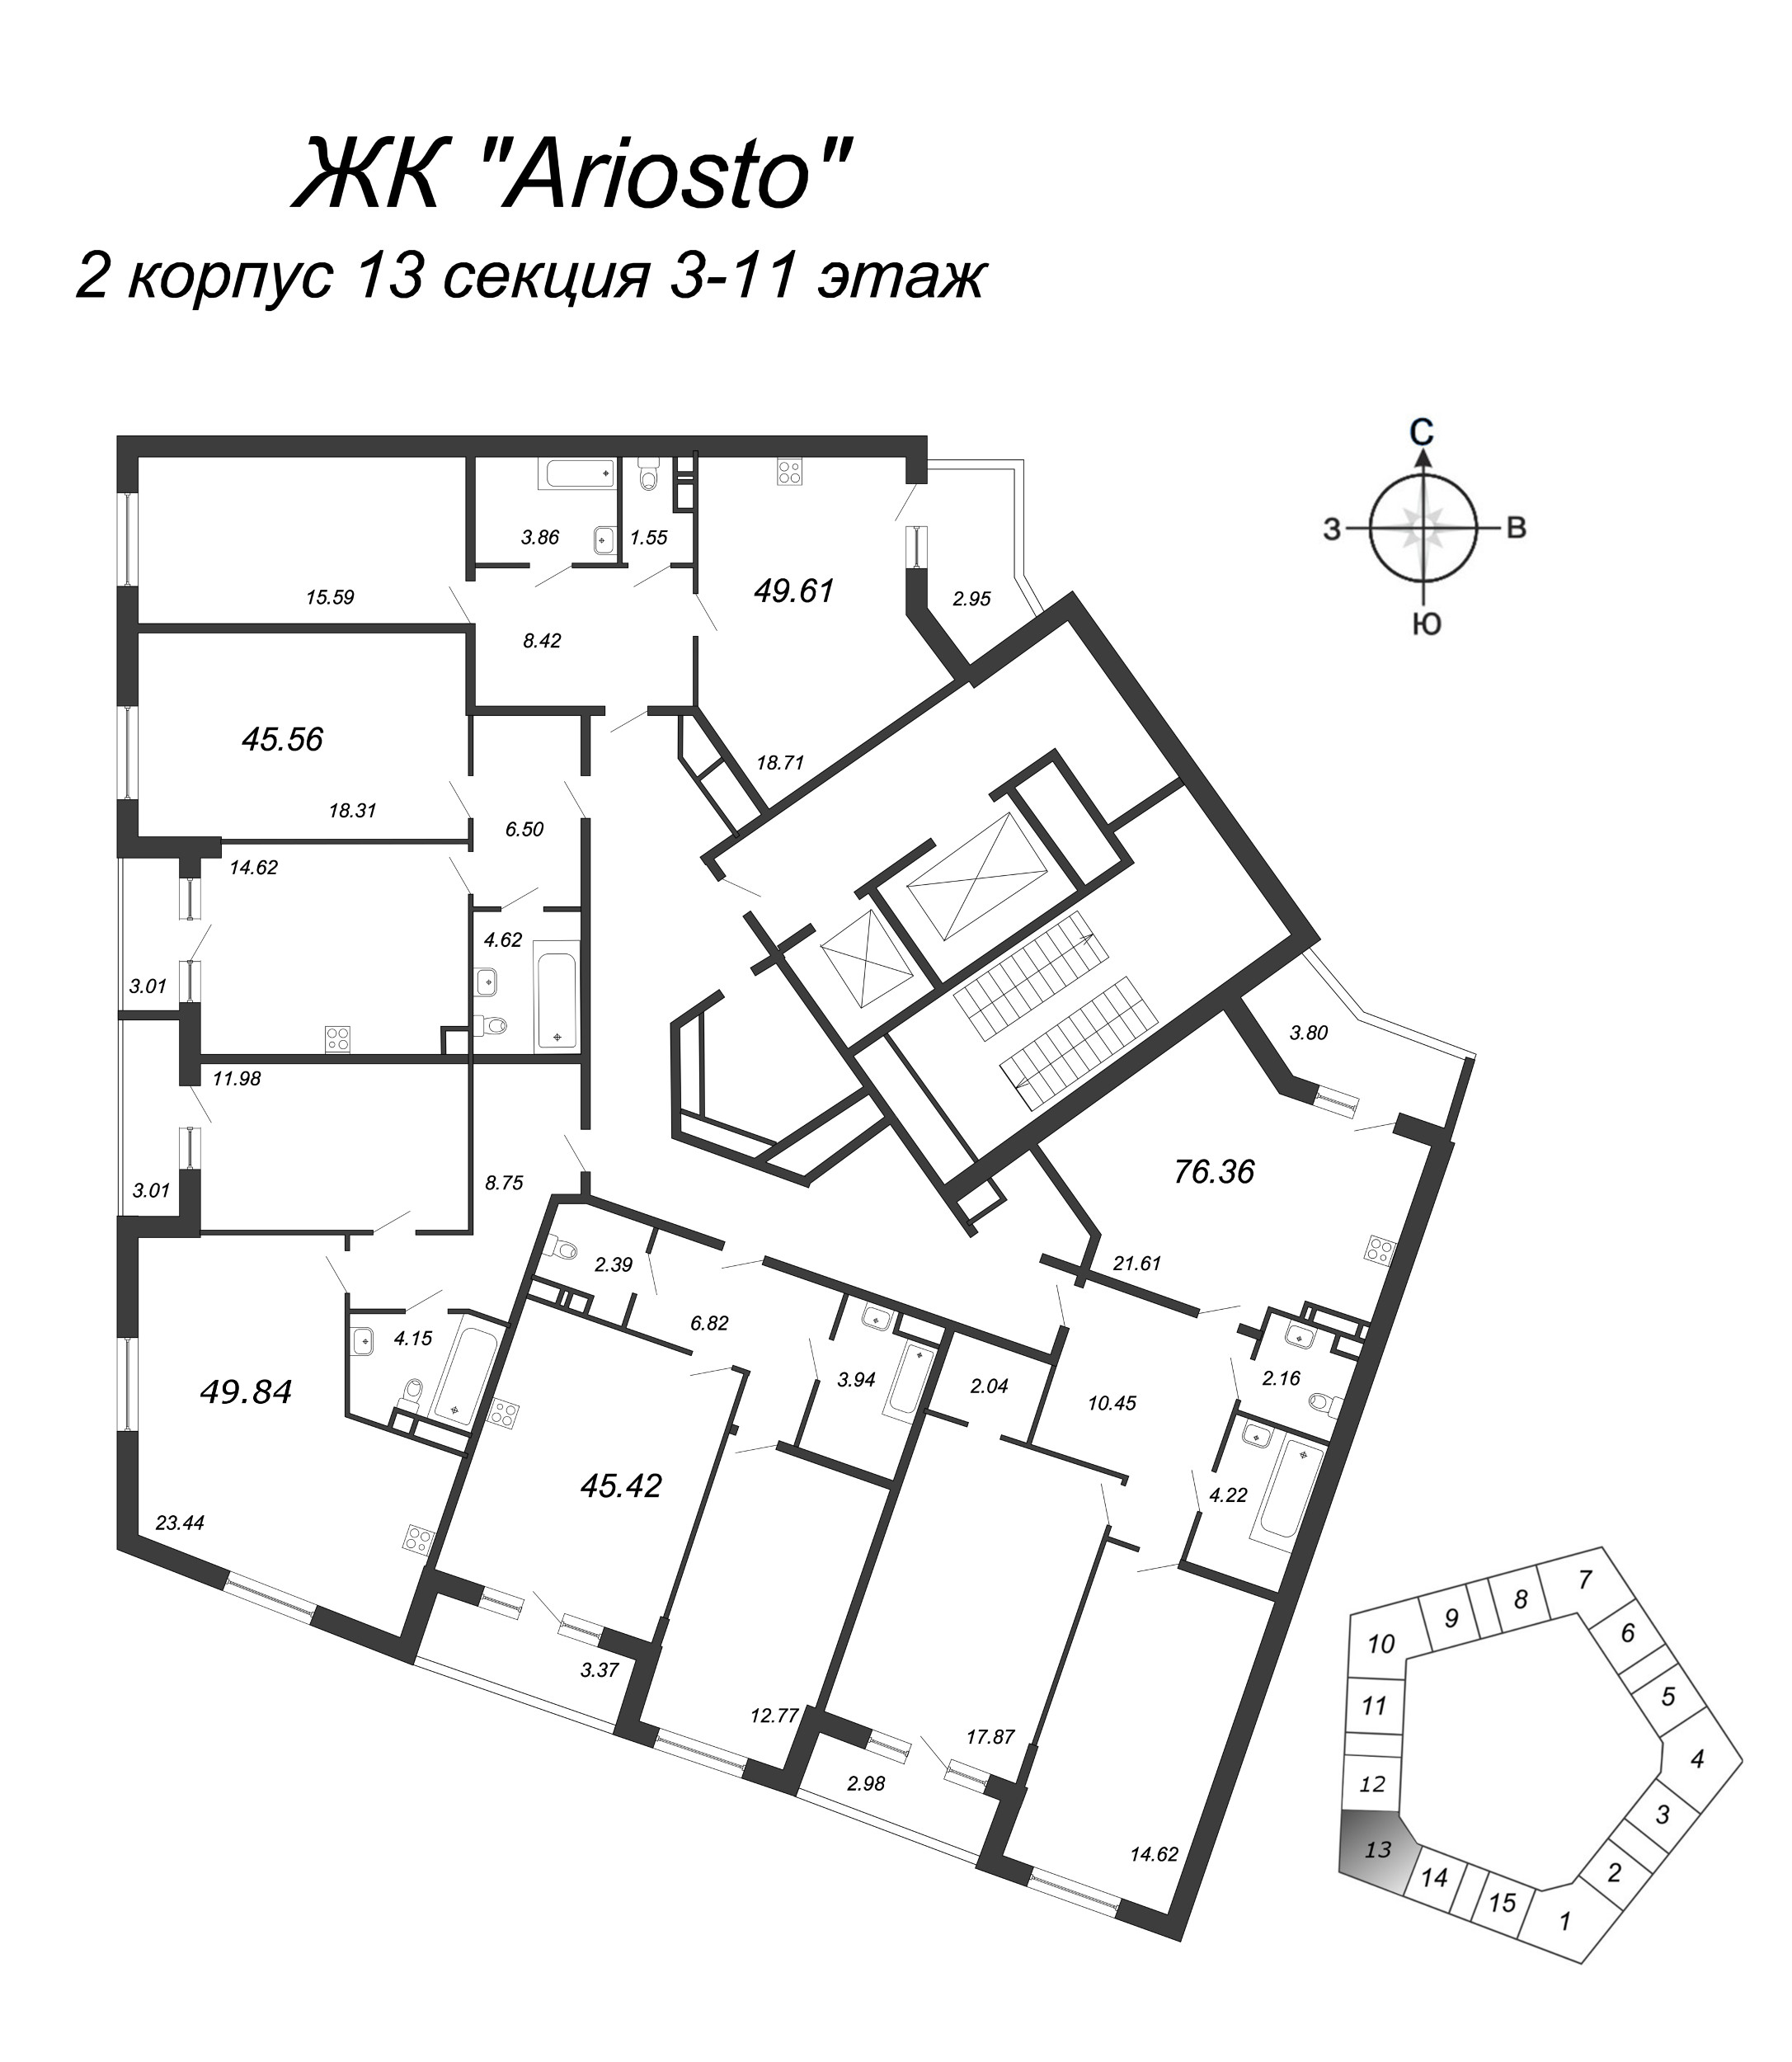 2-комнатная (Евро) квартира, 45.42 м² в ЖК "Ariosto" - планировка этажа